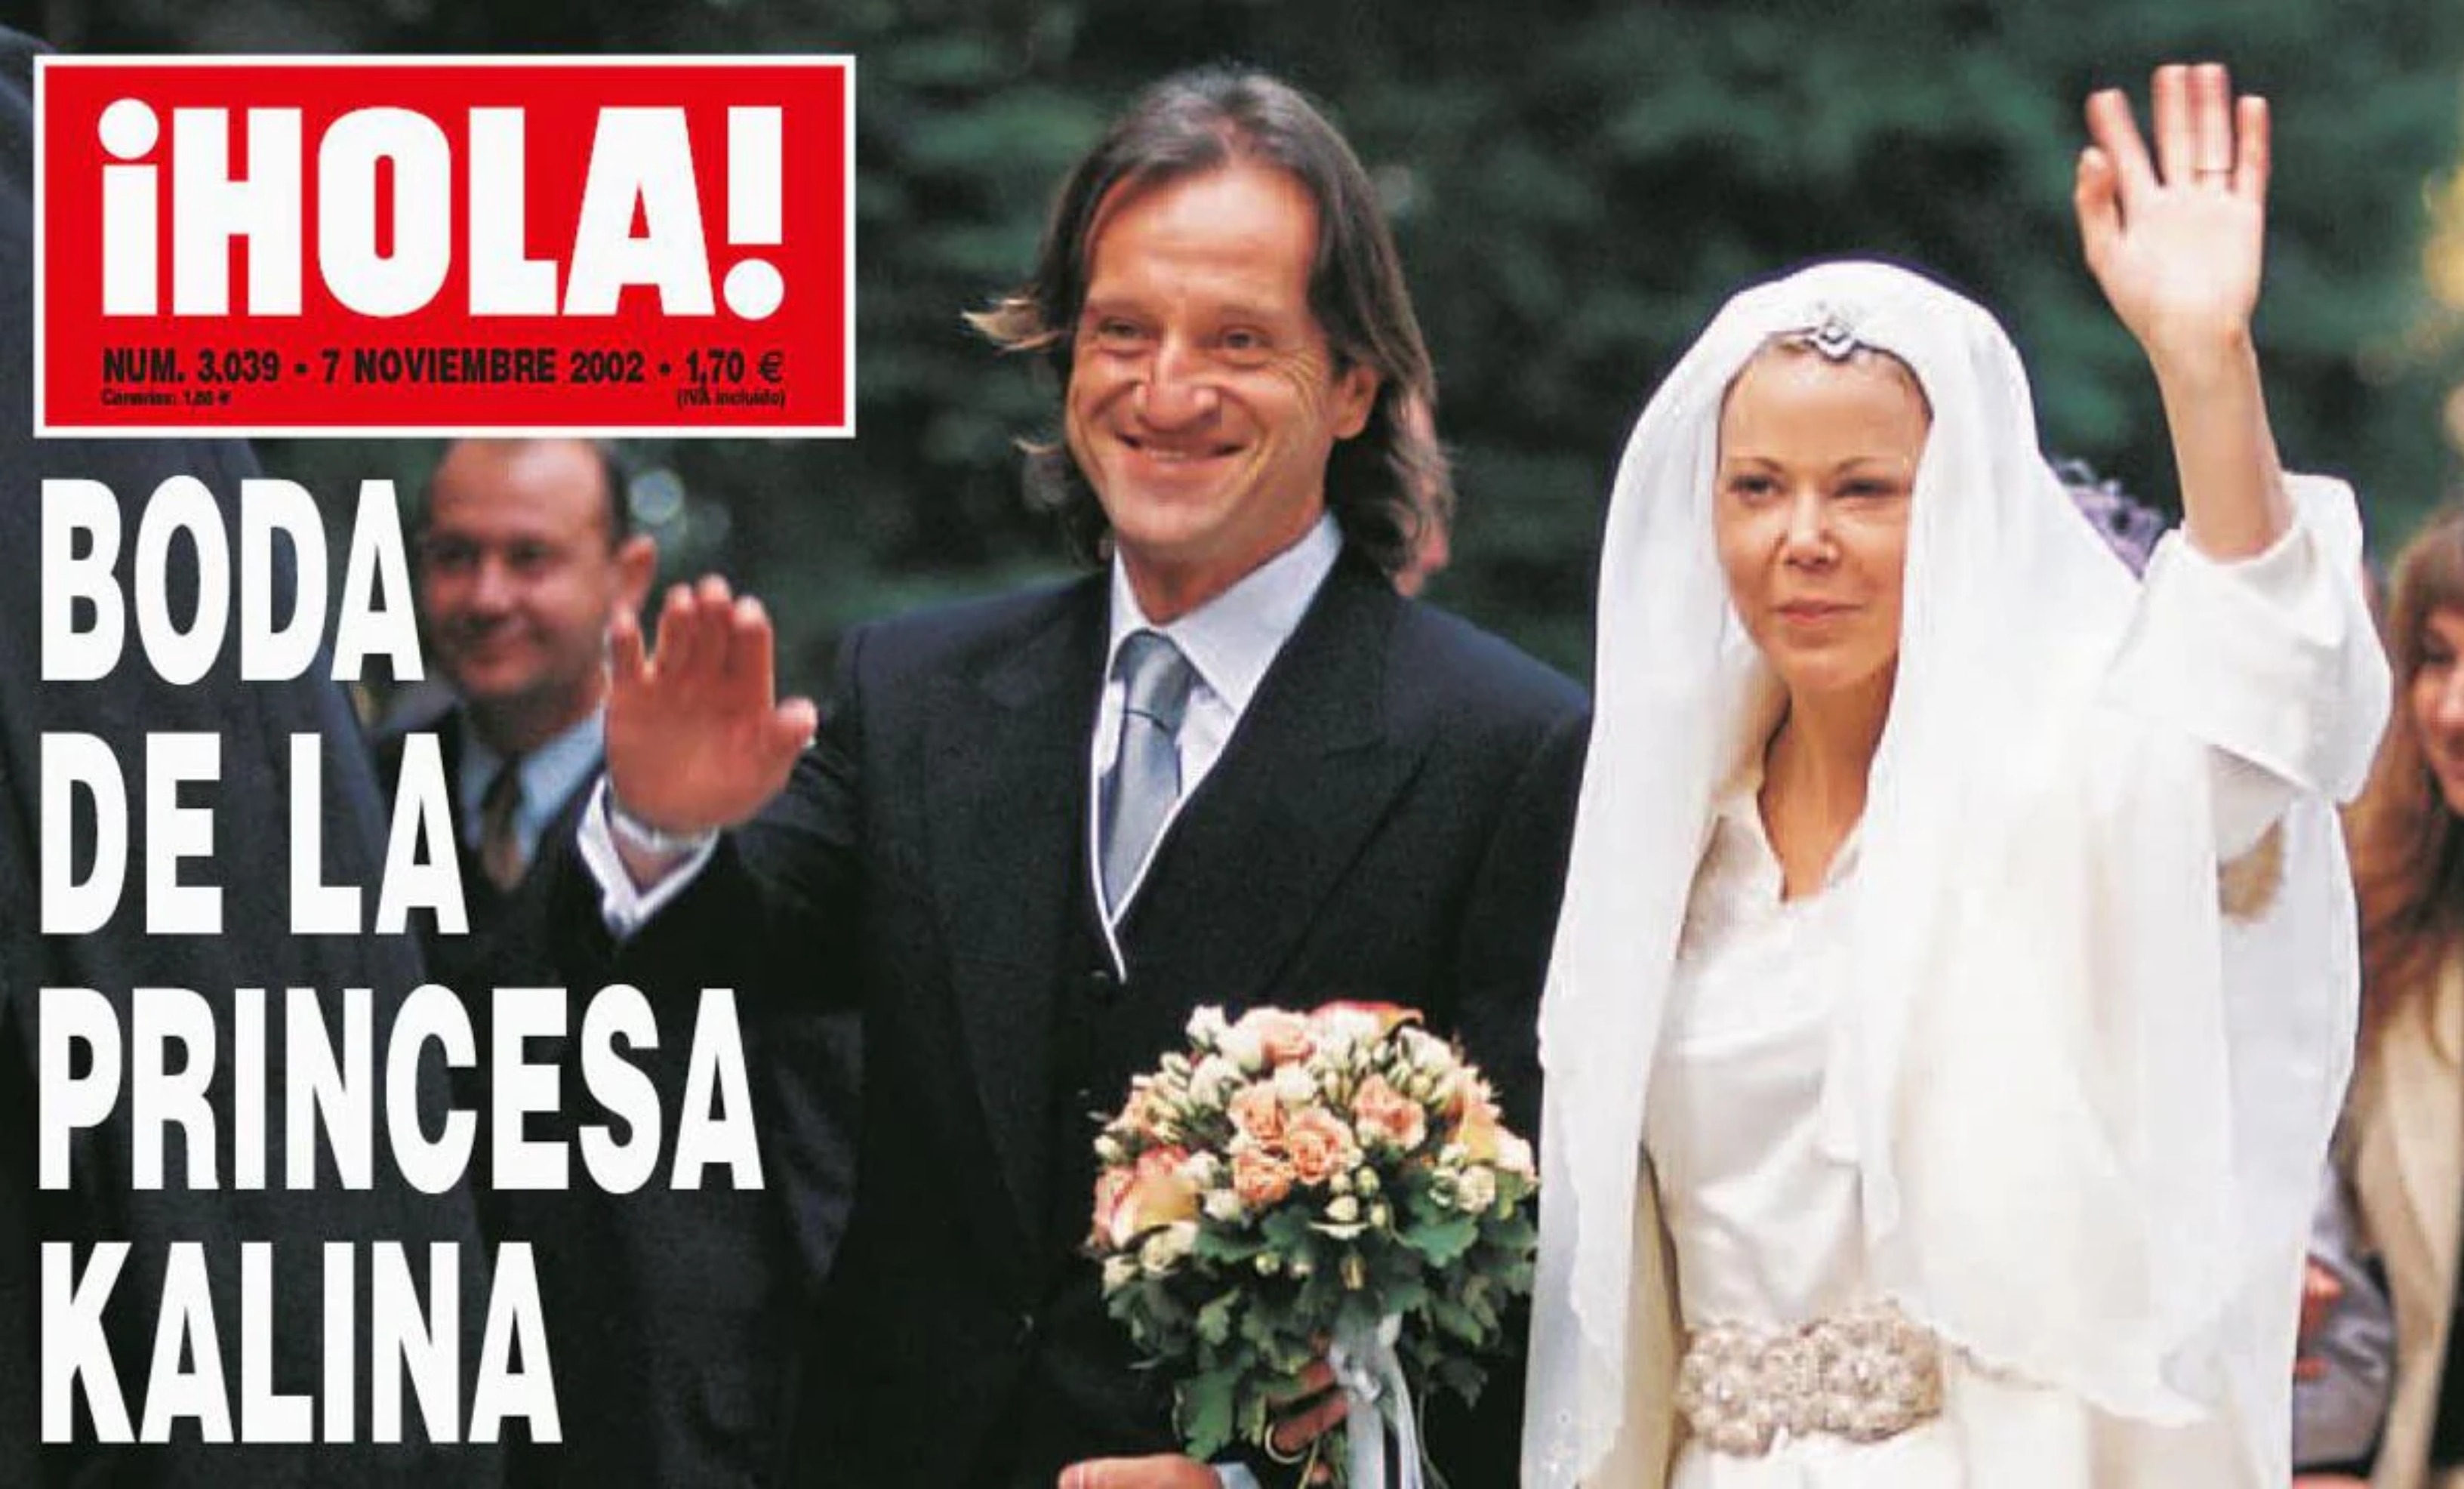 La boda de la princesa Kalina de Bulgaria con el empresario español Kitín Muñoz / Revista ¡Hola!